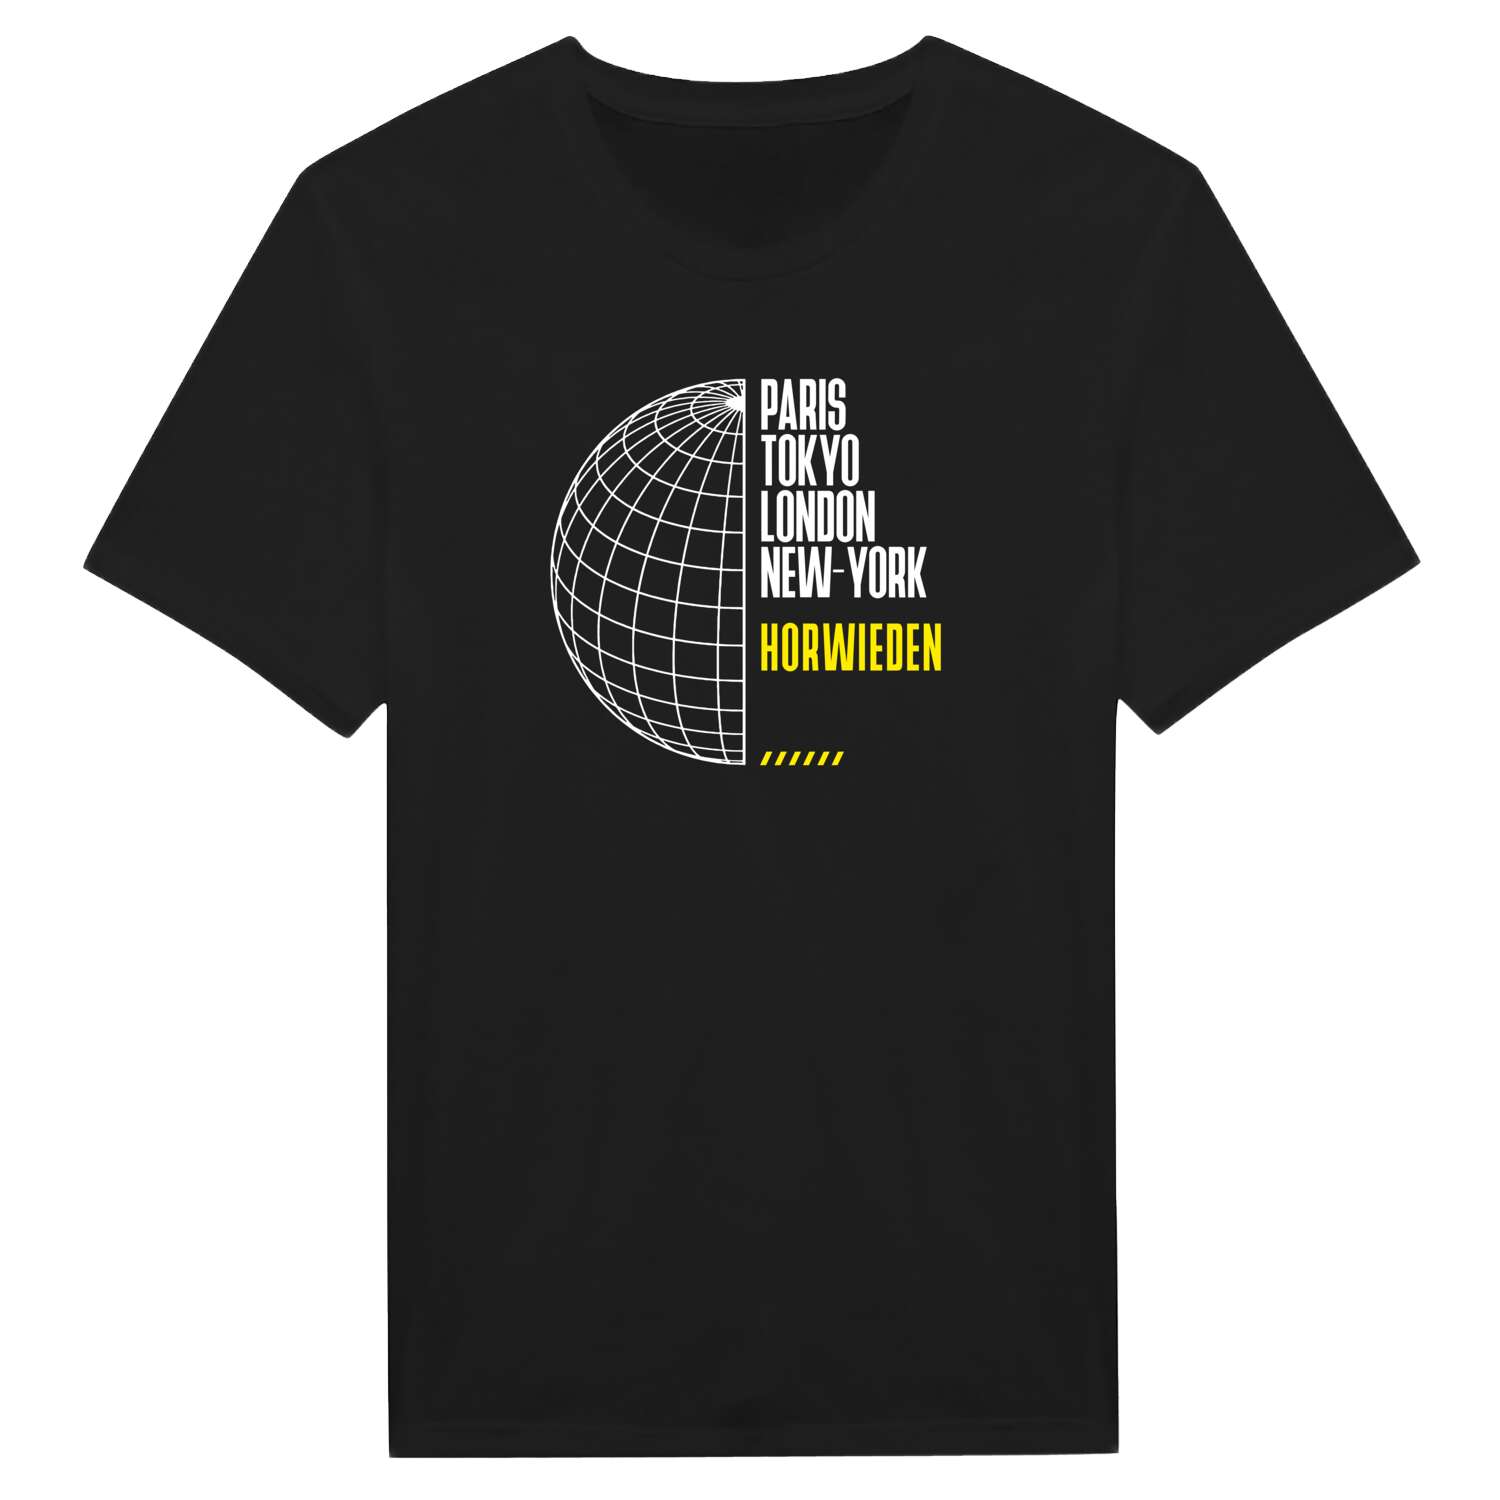 Horwieden T-Shirt »Paris Tokyo London«